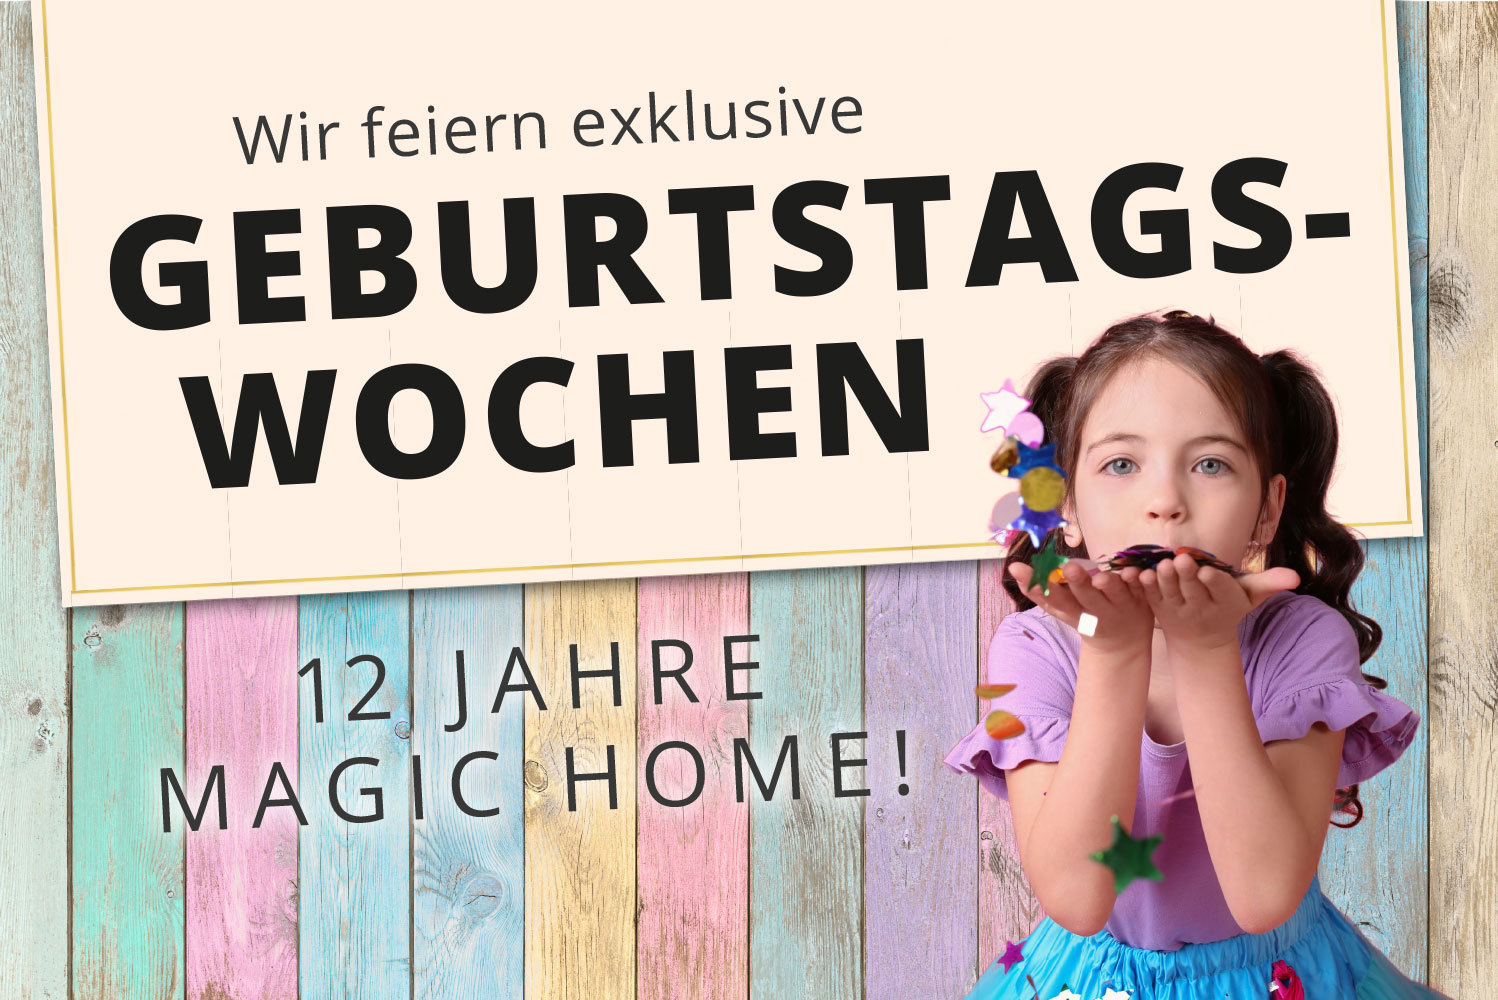 Magic Home in Lünen feiert Geburtstag und Sie feiern mit!